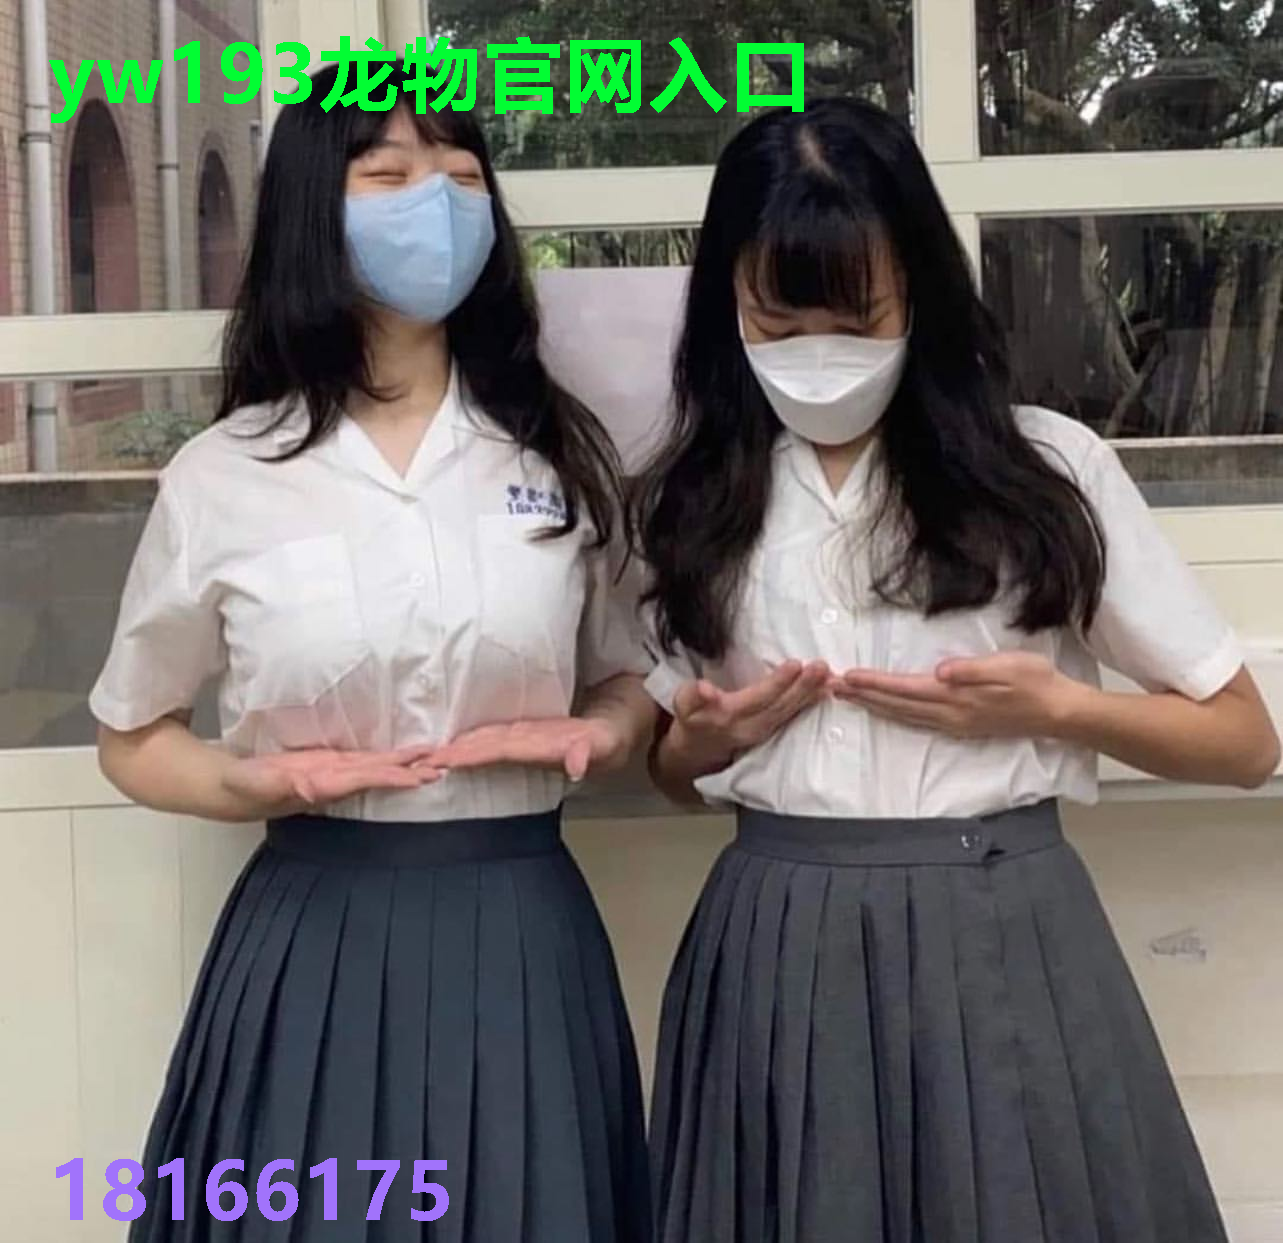 yw193龙物官网入口